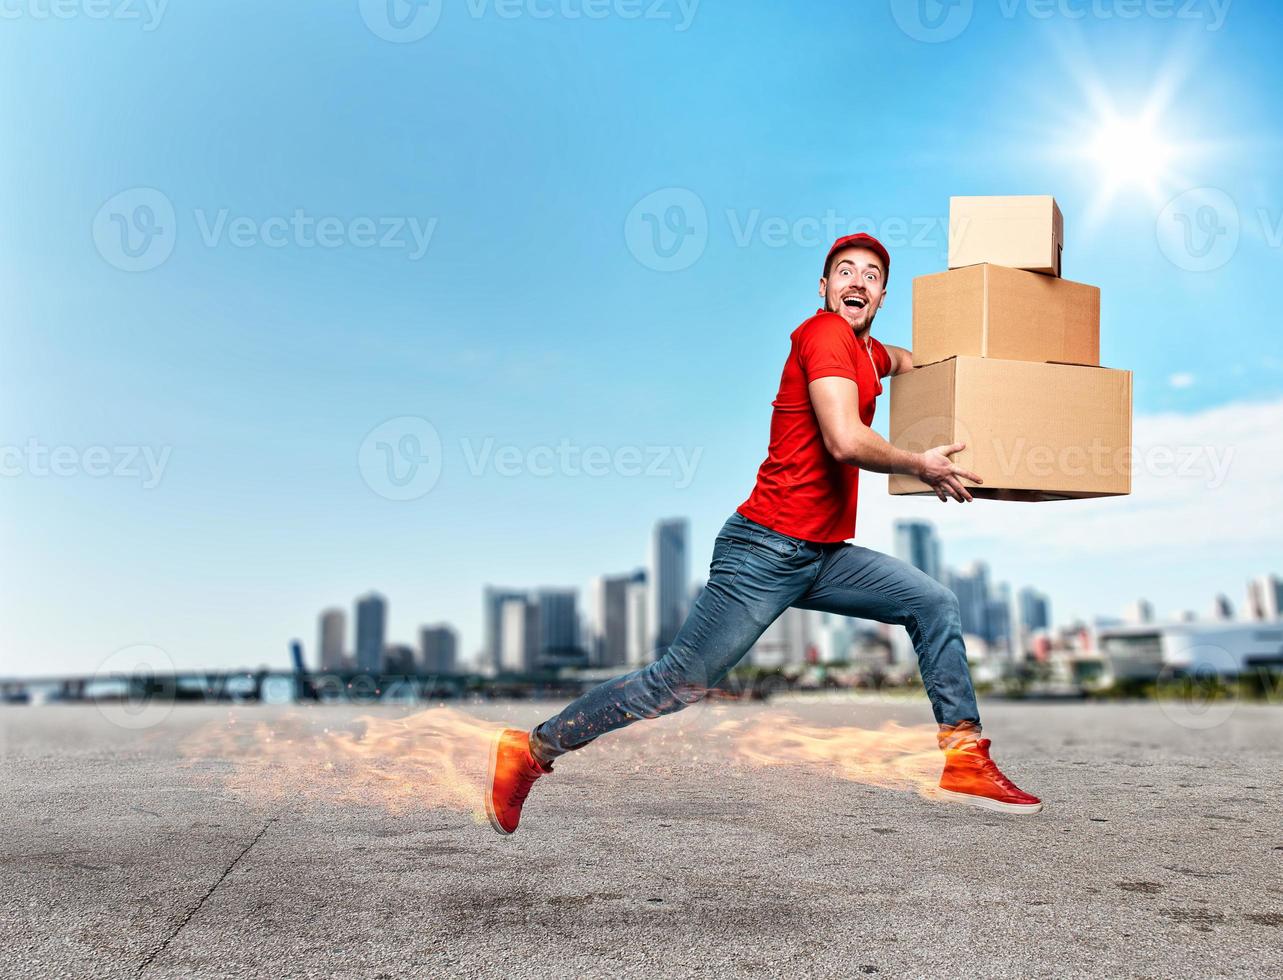 mensajero con ardiente pies tiene un lote de cajas a entrega. emocional expresión. foto